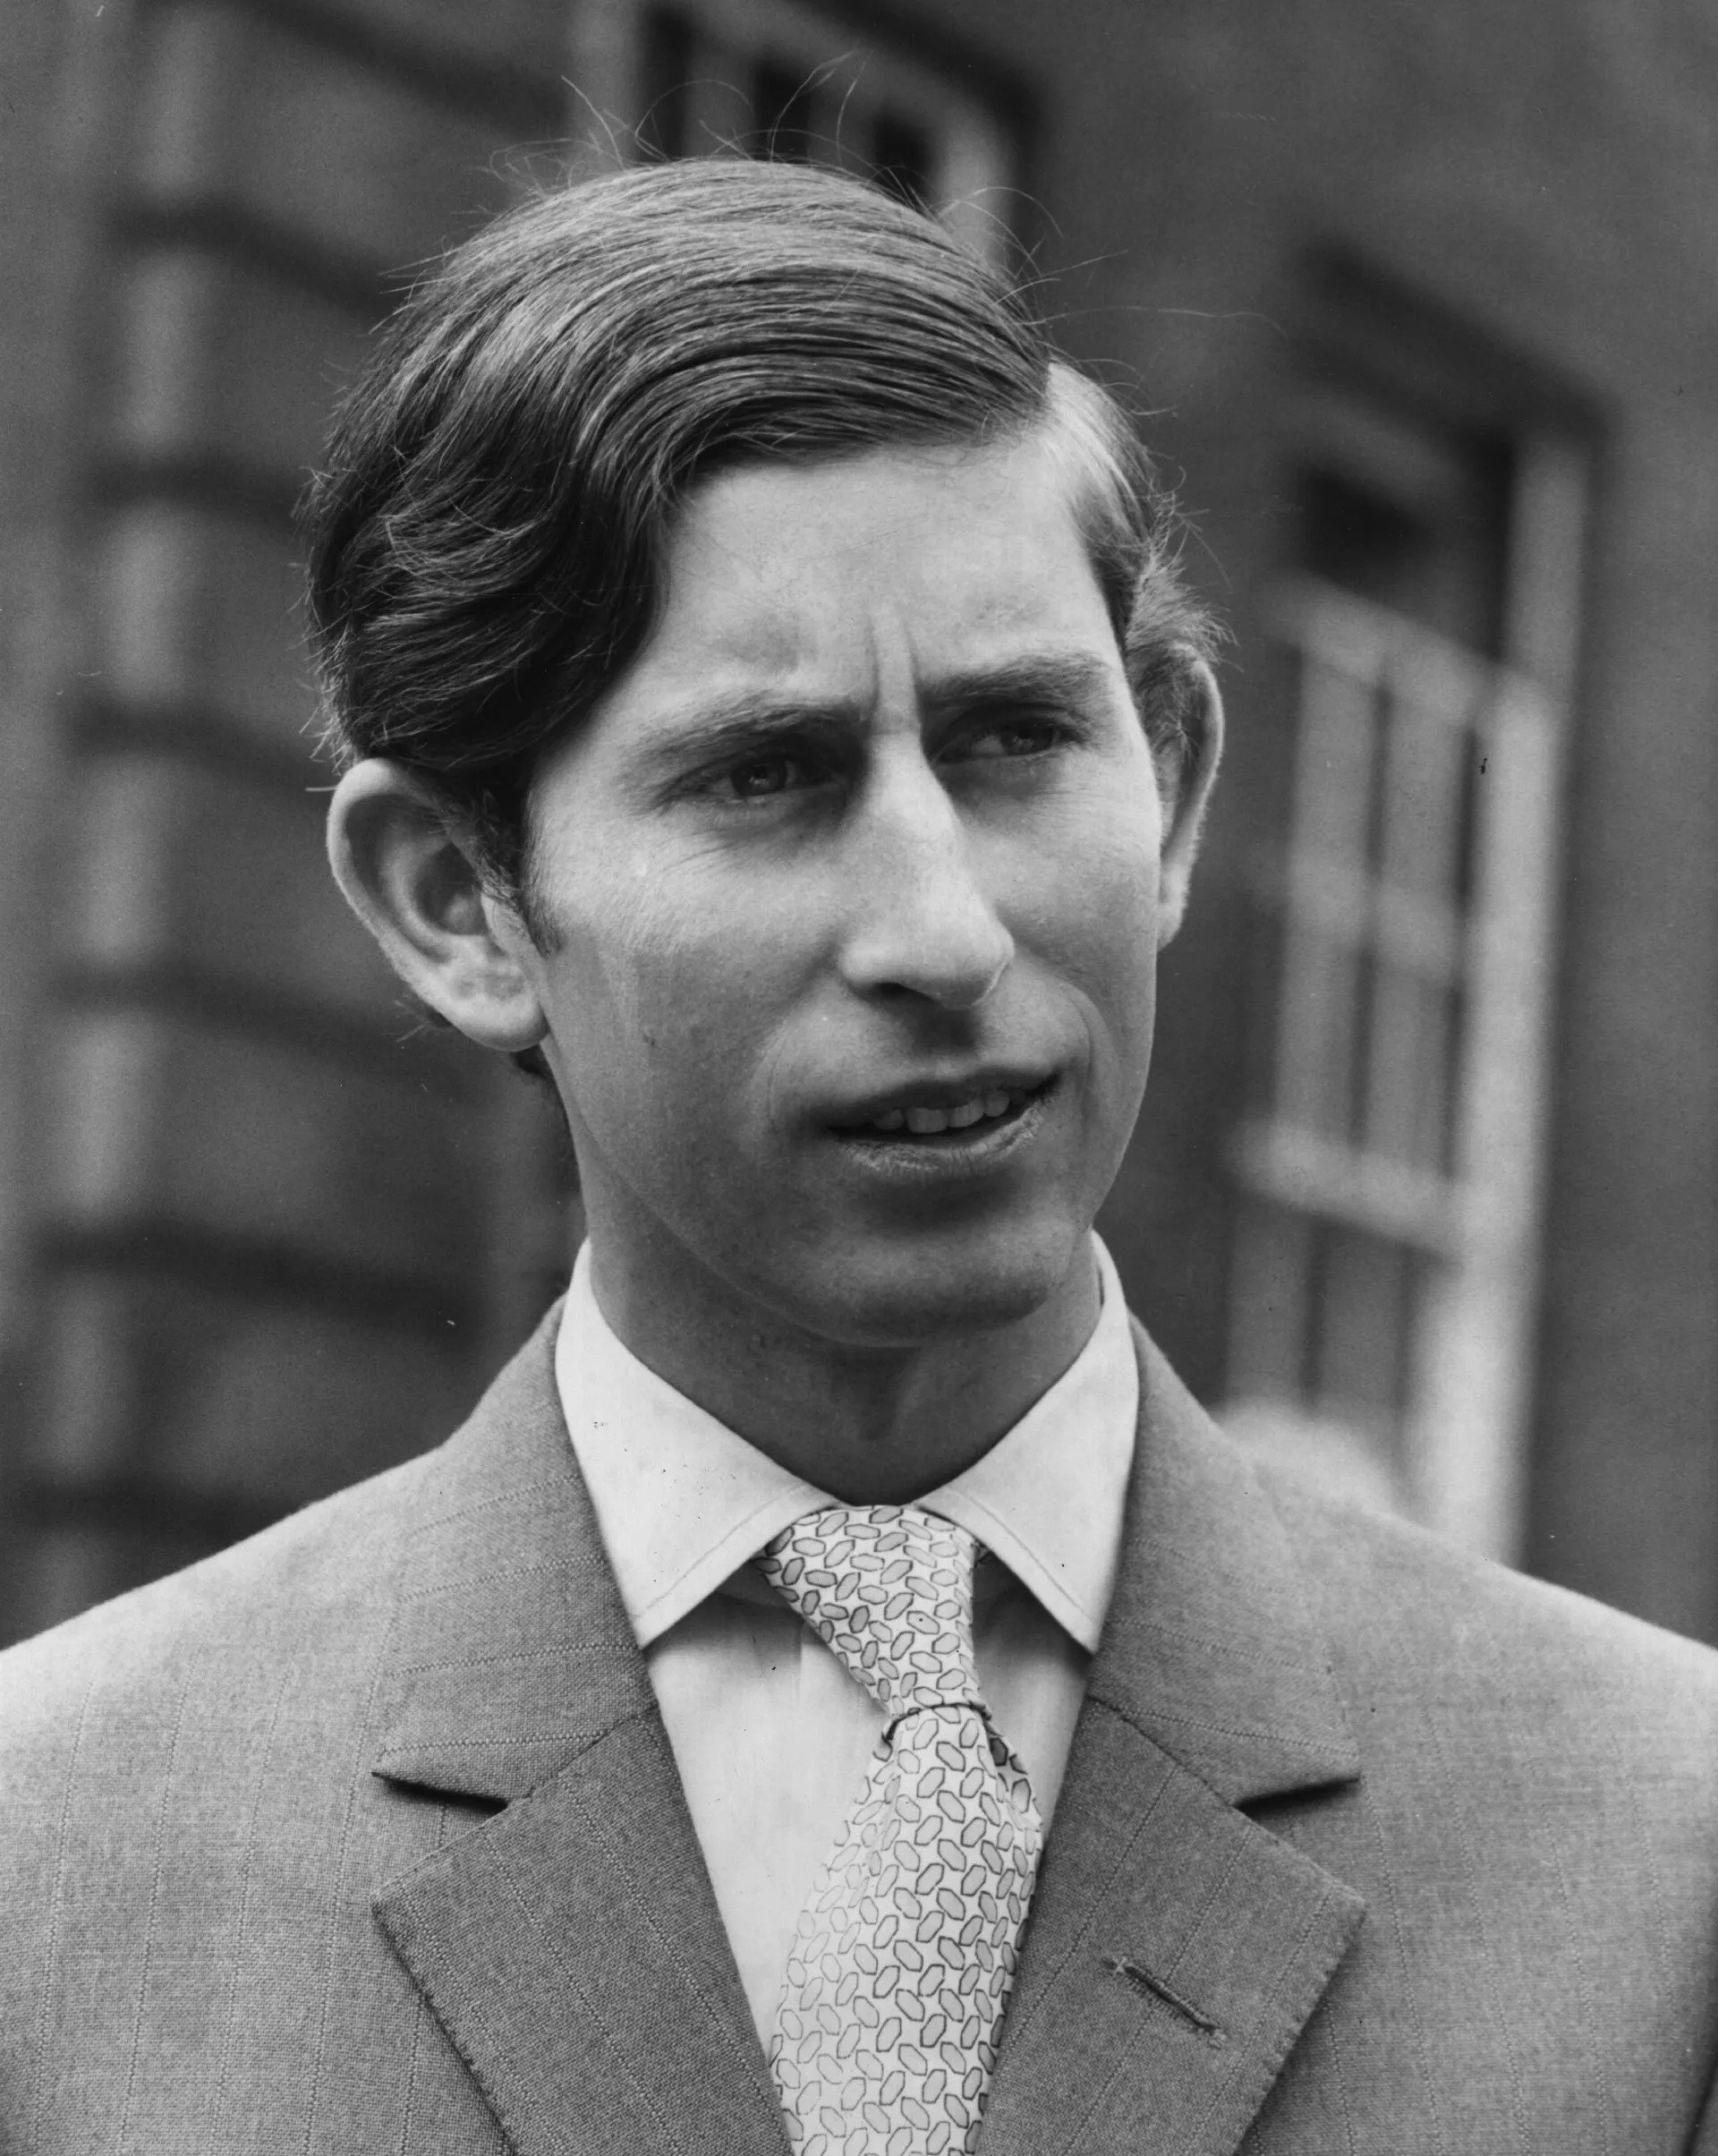 23 юни 1970 г.: принц Чарлз от Уелс завършва бакалавърска степен по история.